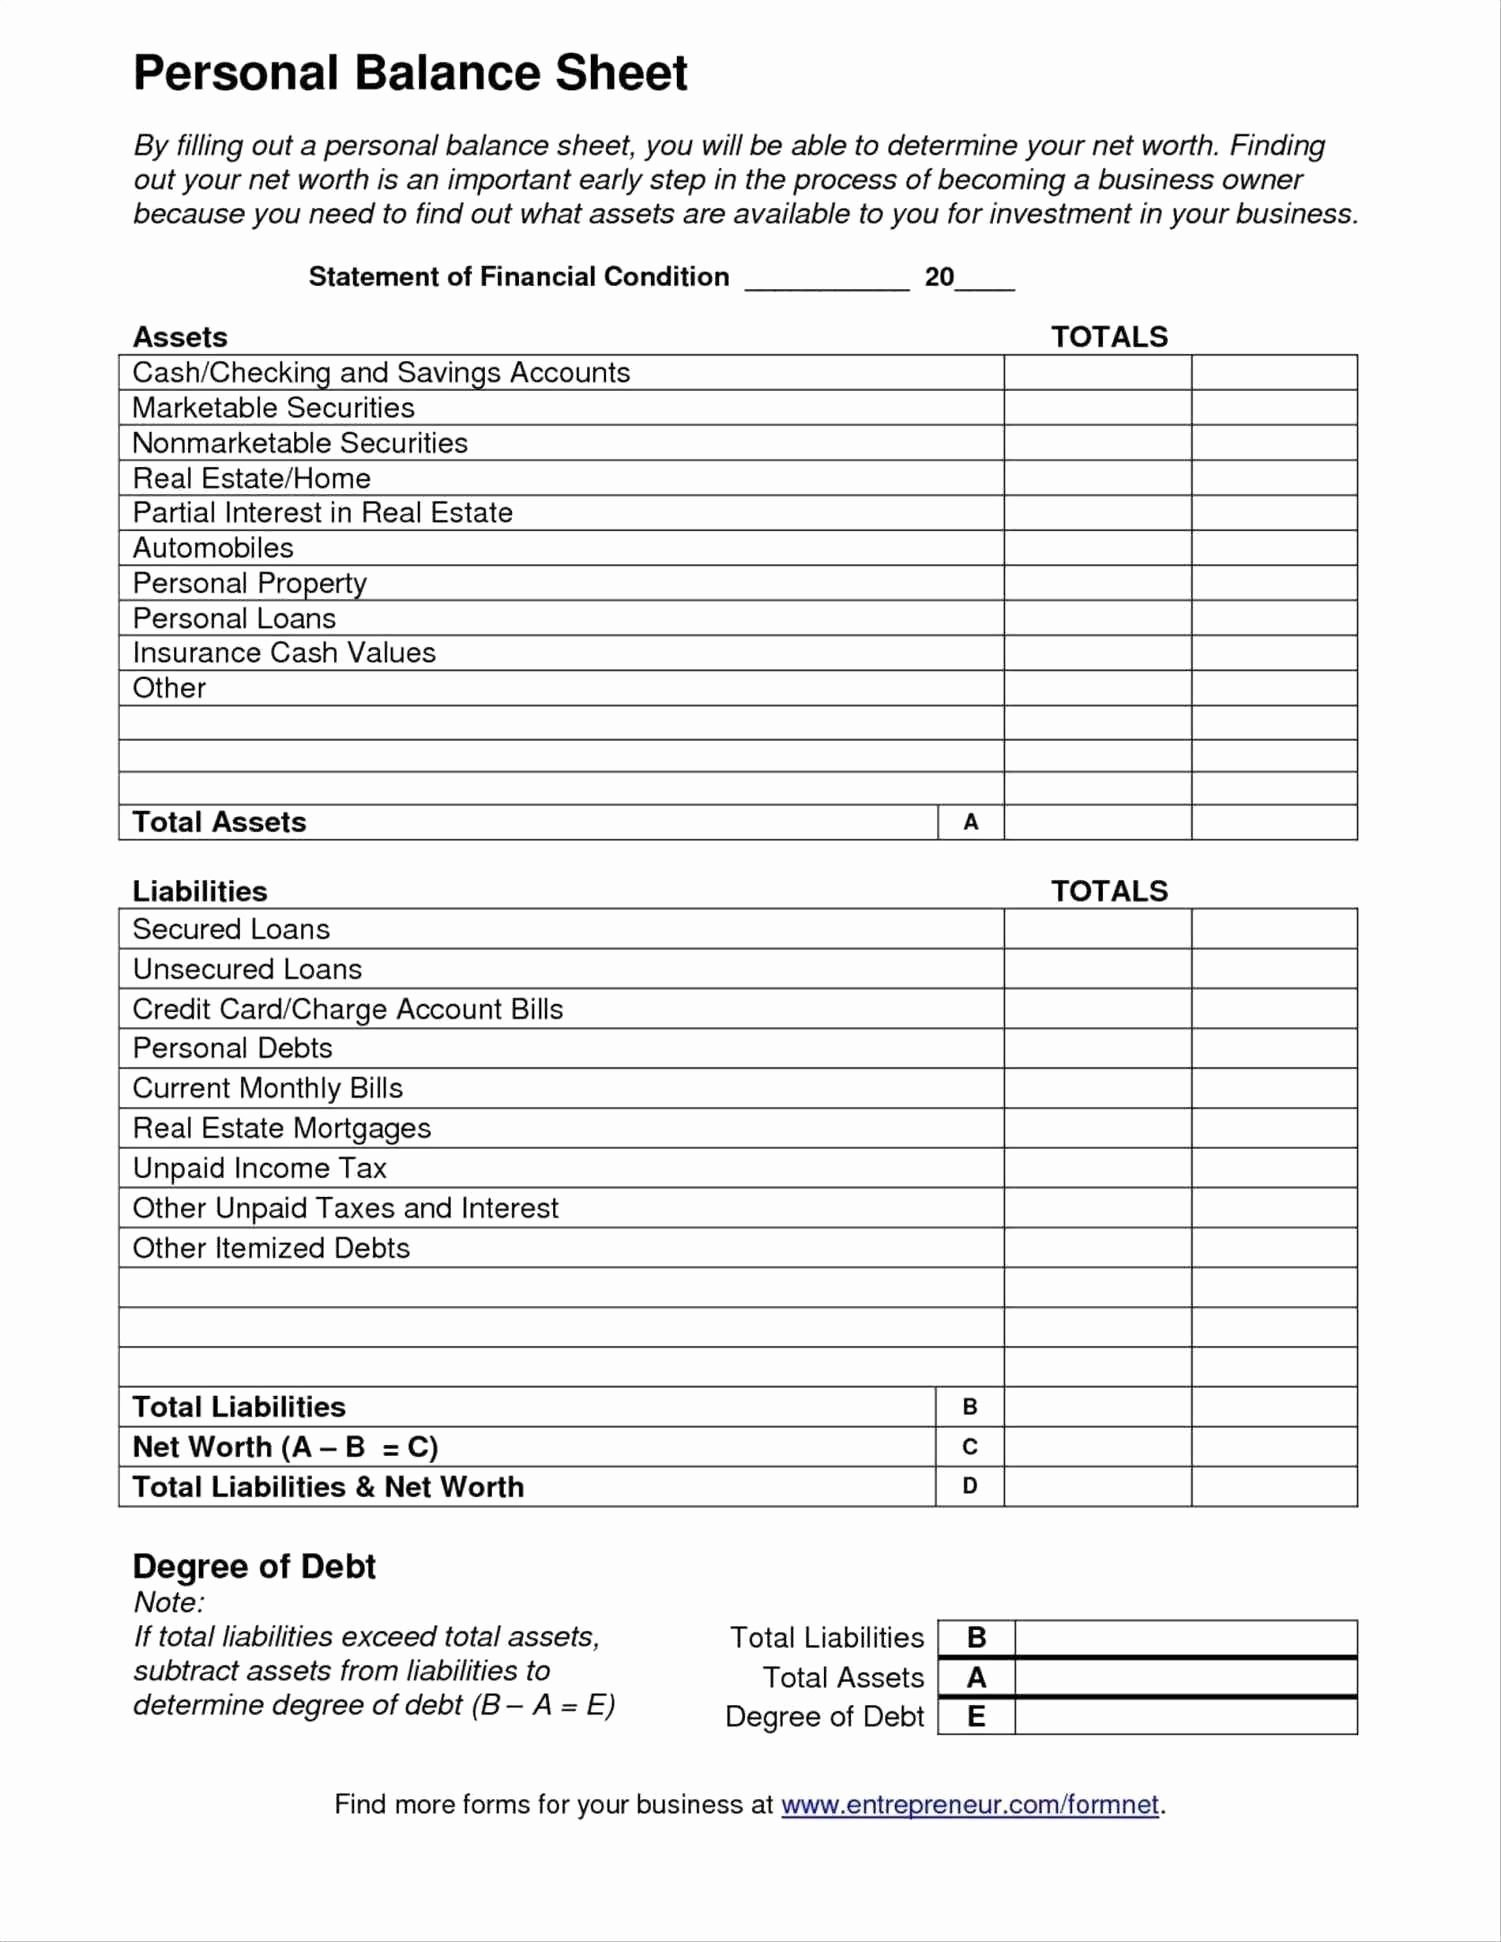 Student Loan Interest Deduction Worksheet 2016  Briefencounters With Student Loan Interest Deduction Worksheet 2016